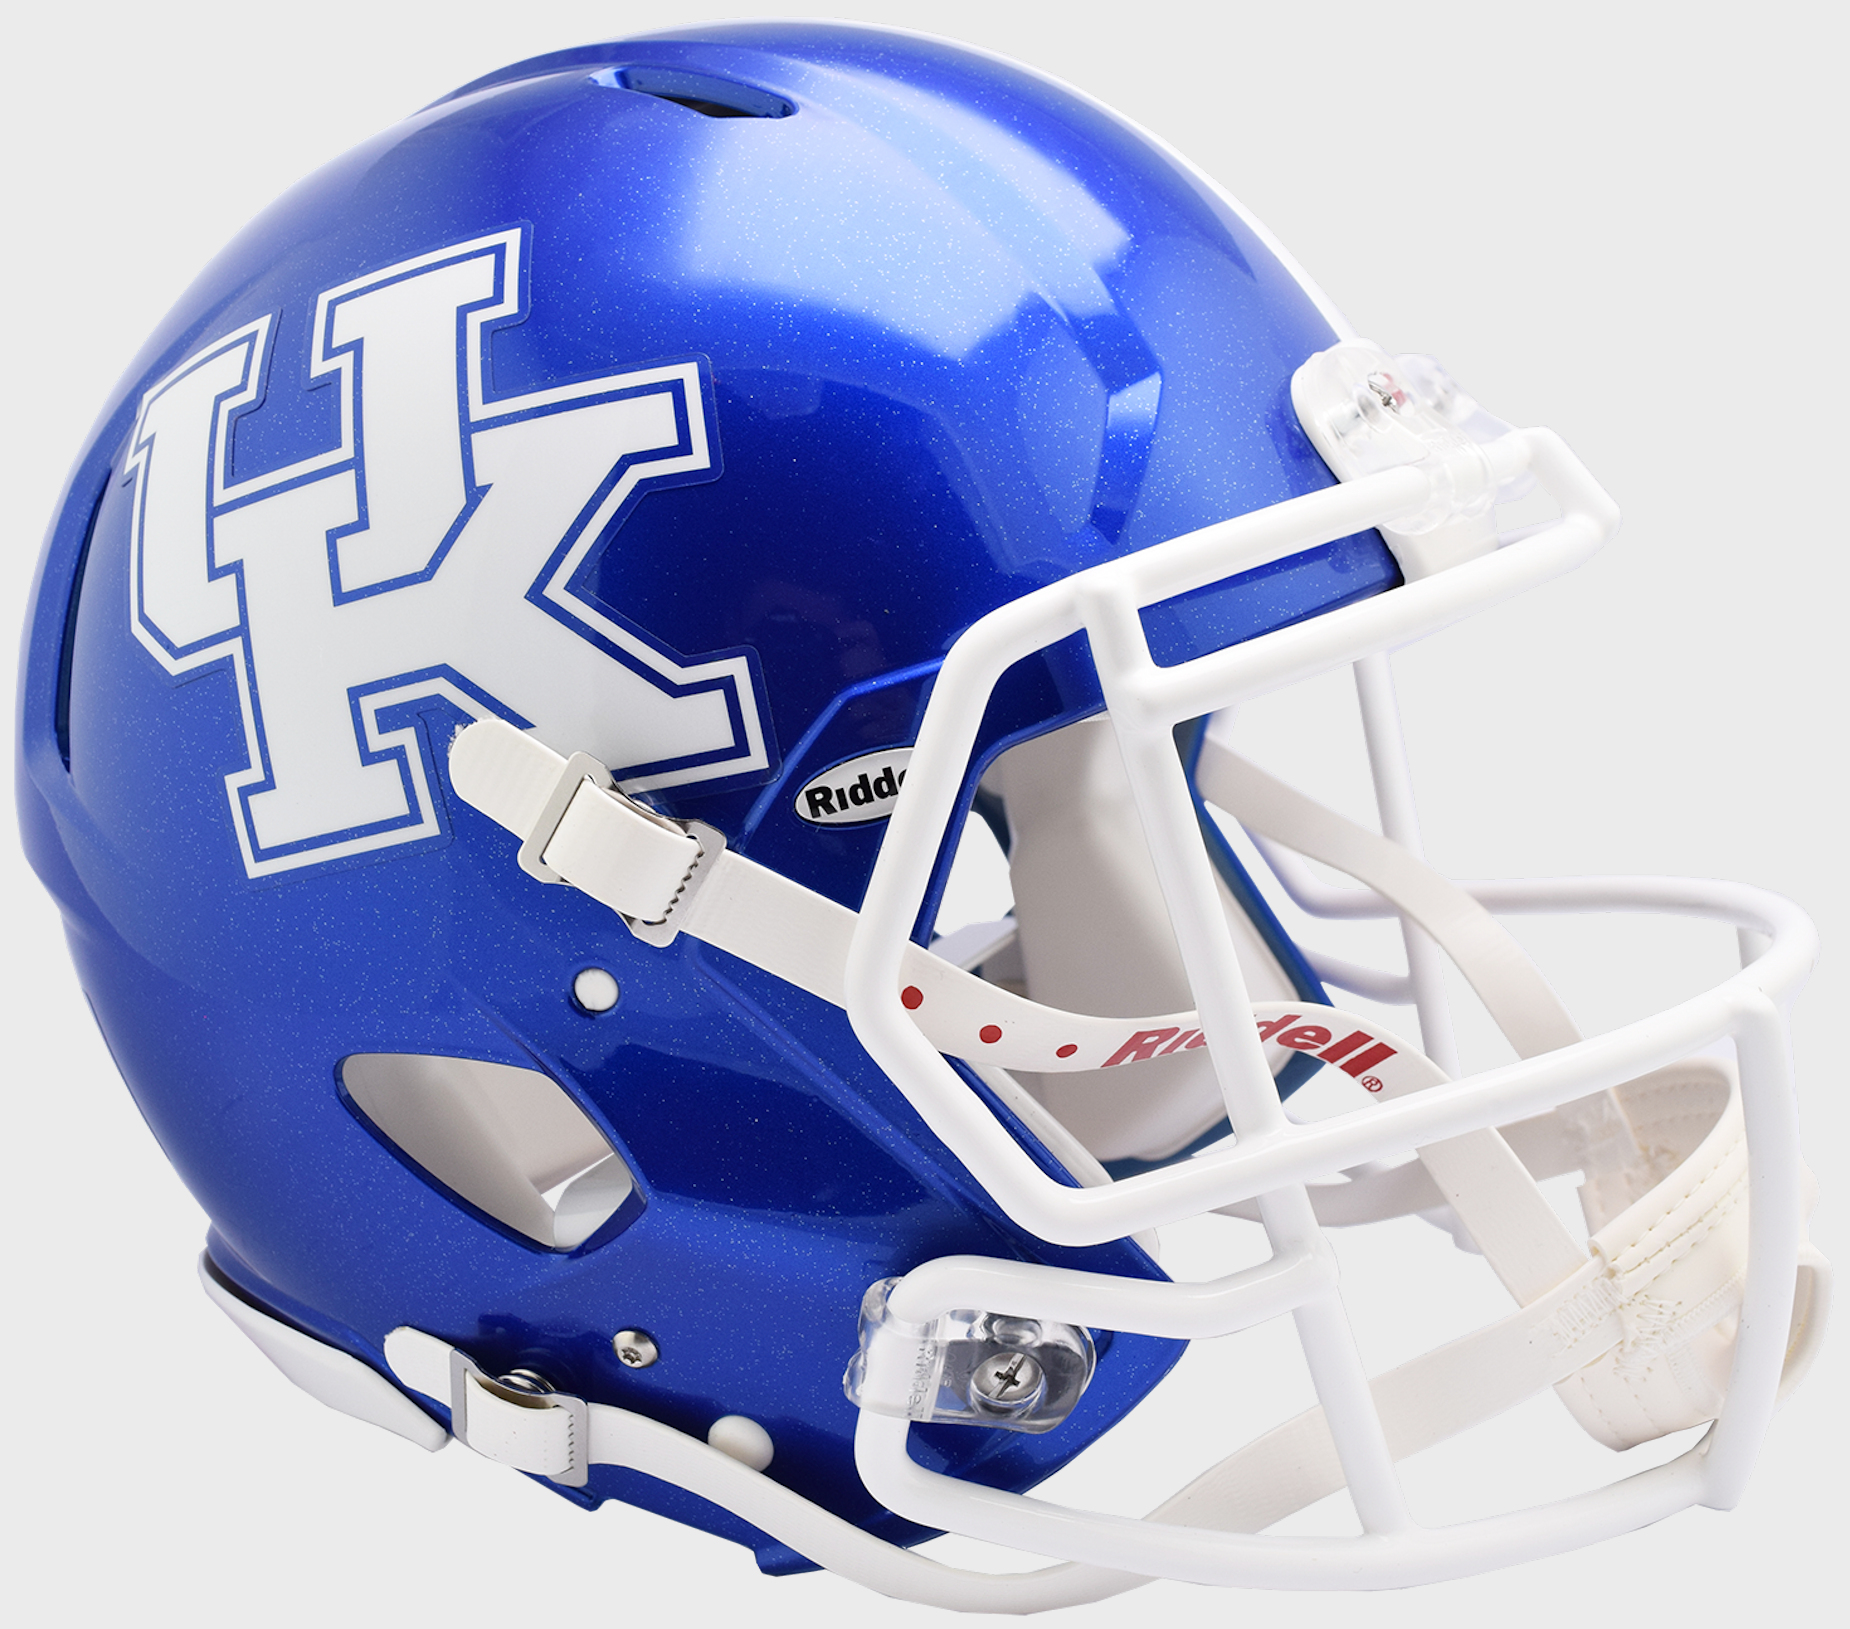 Kentucky Wildcats authentic full size helmet